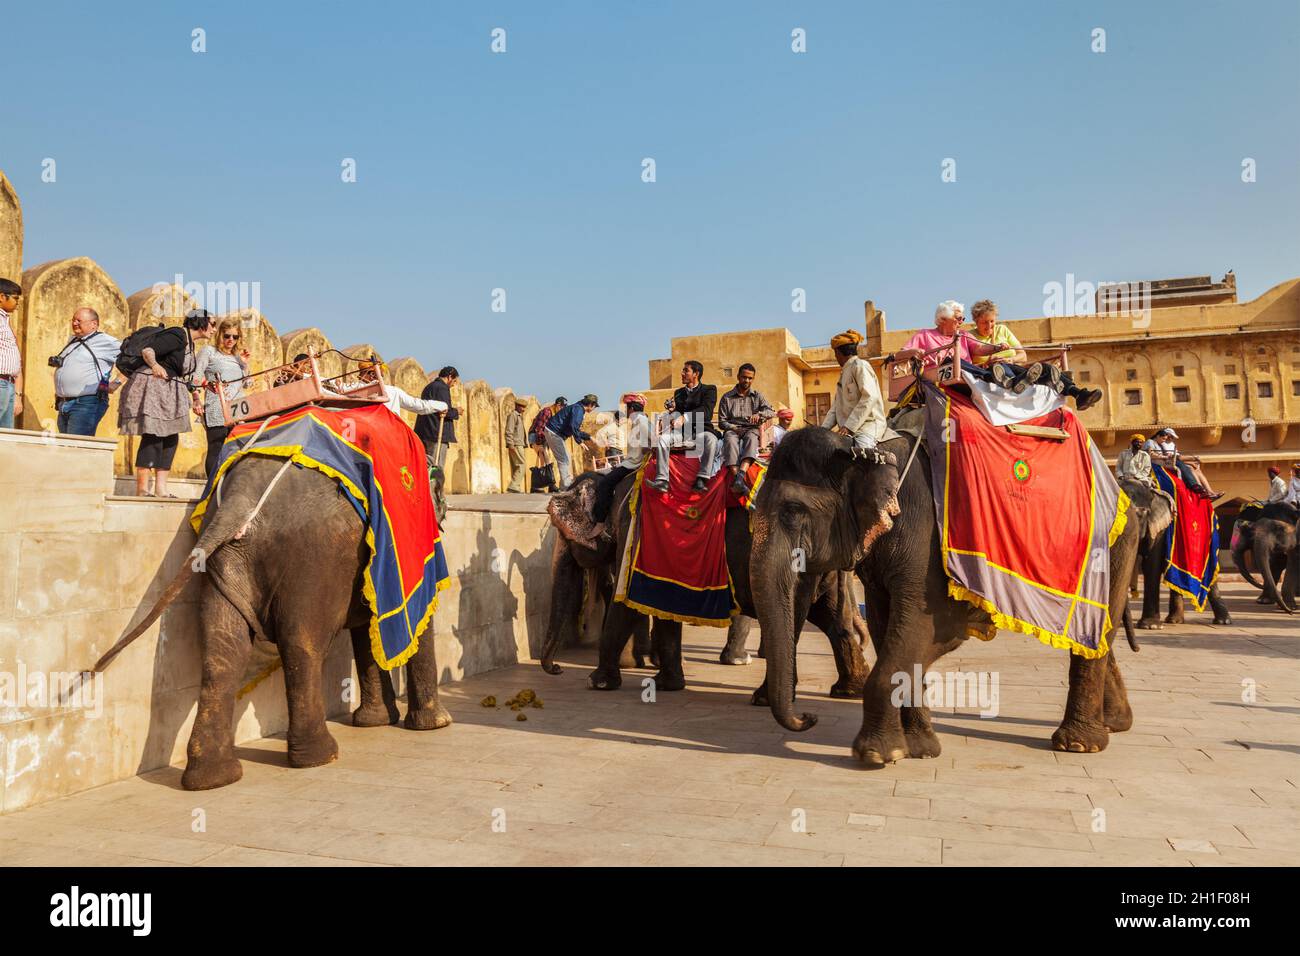 JAIPUR, INDE - NOVEMBRE, 18: Touristes à cheval éléphants à Amber fort, Rajasthan, Elephant Ride est un divertissement populaire pour les touristes en Inde Banque D'Images